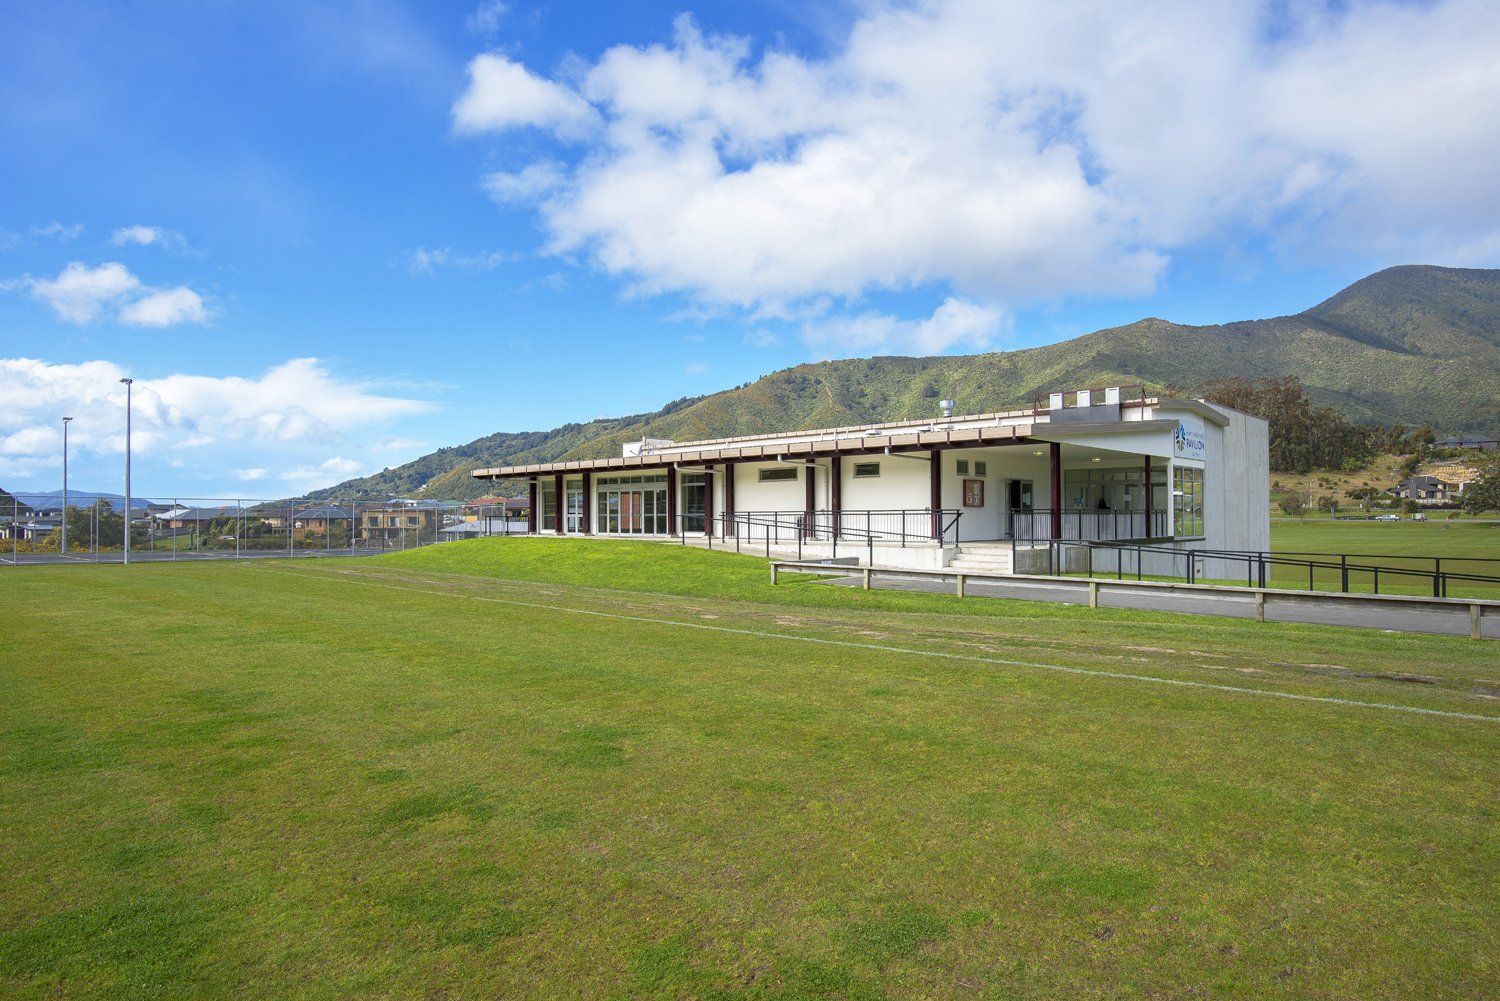 Port Marlborough Pavilion in Picton, Marlborough, NZ